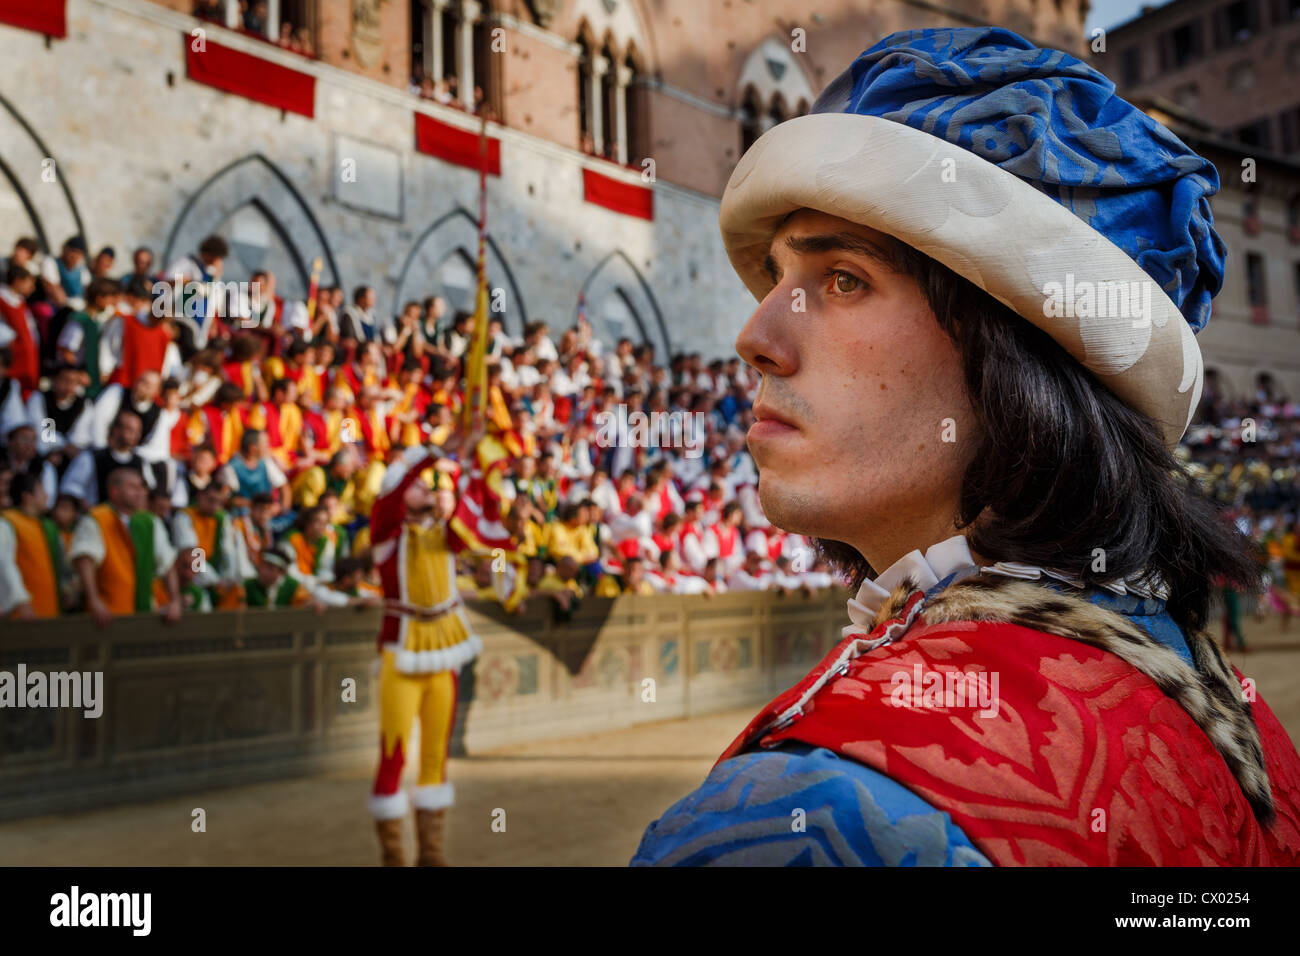 Der Festzug - die historische Parade vor dem Palio Pferderennen stattfindet, Piazza del Campo, Siena, Italien Stockfoto